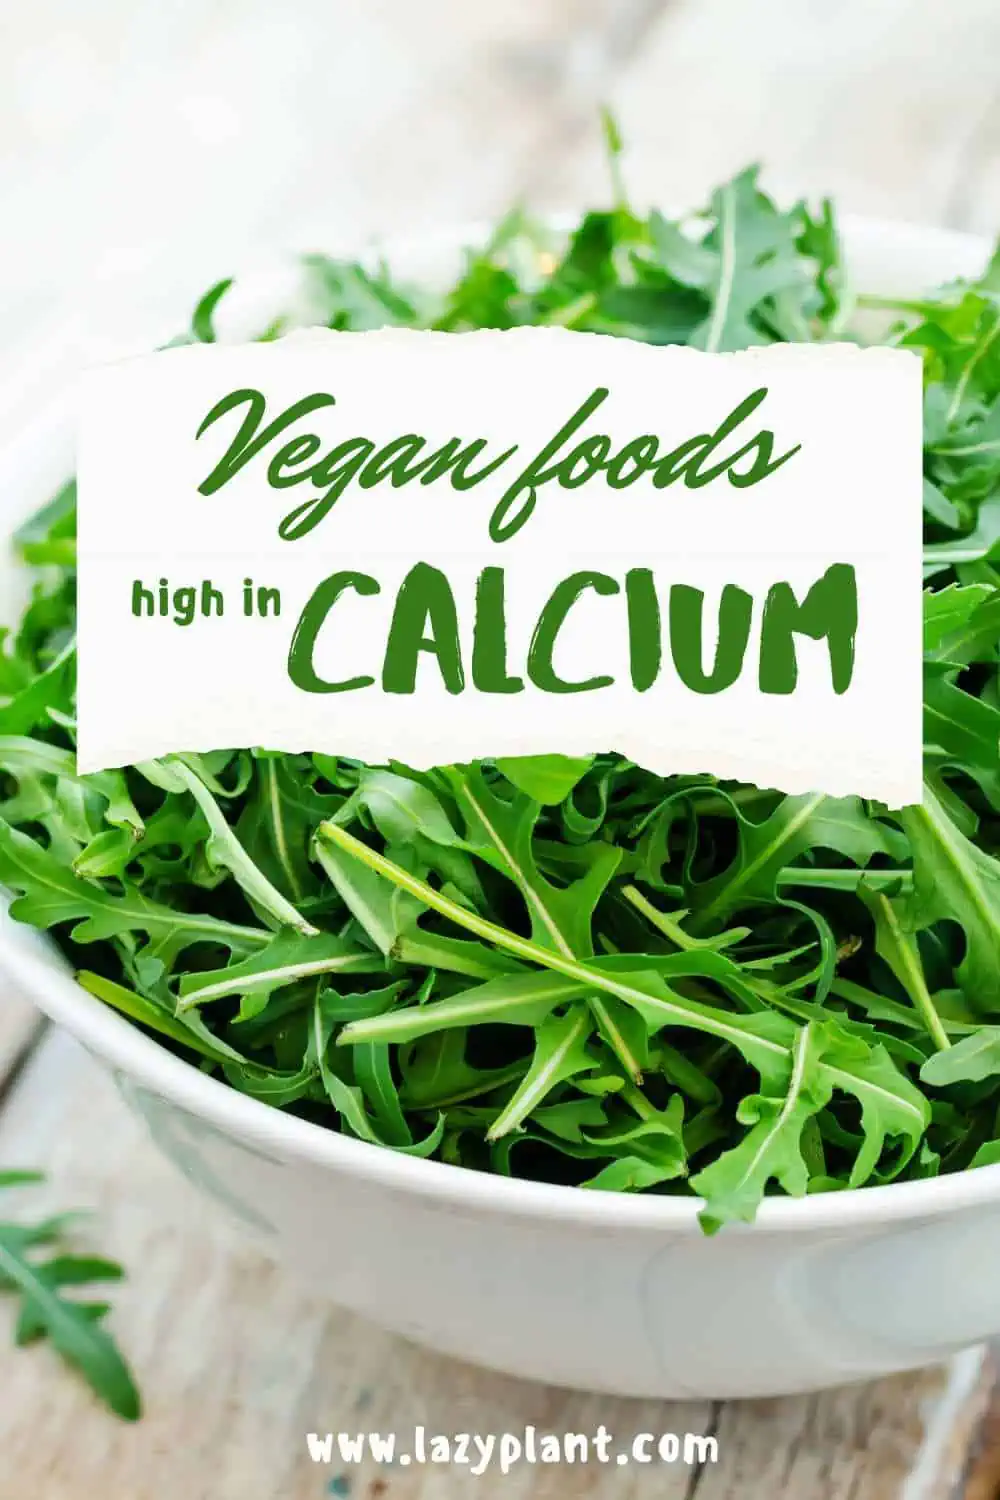 How to get adequate amounts of calcium if I’m vegan?